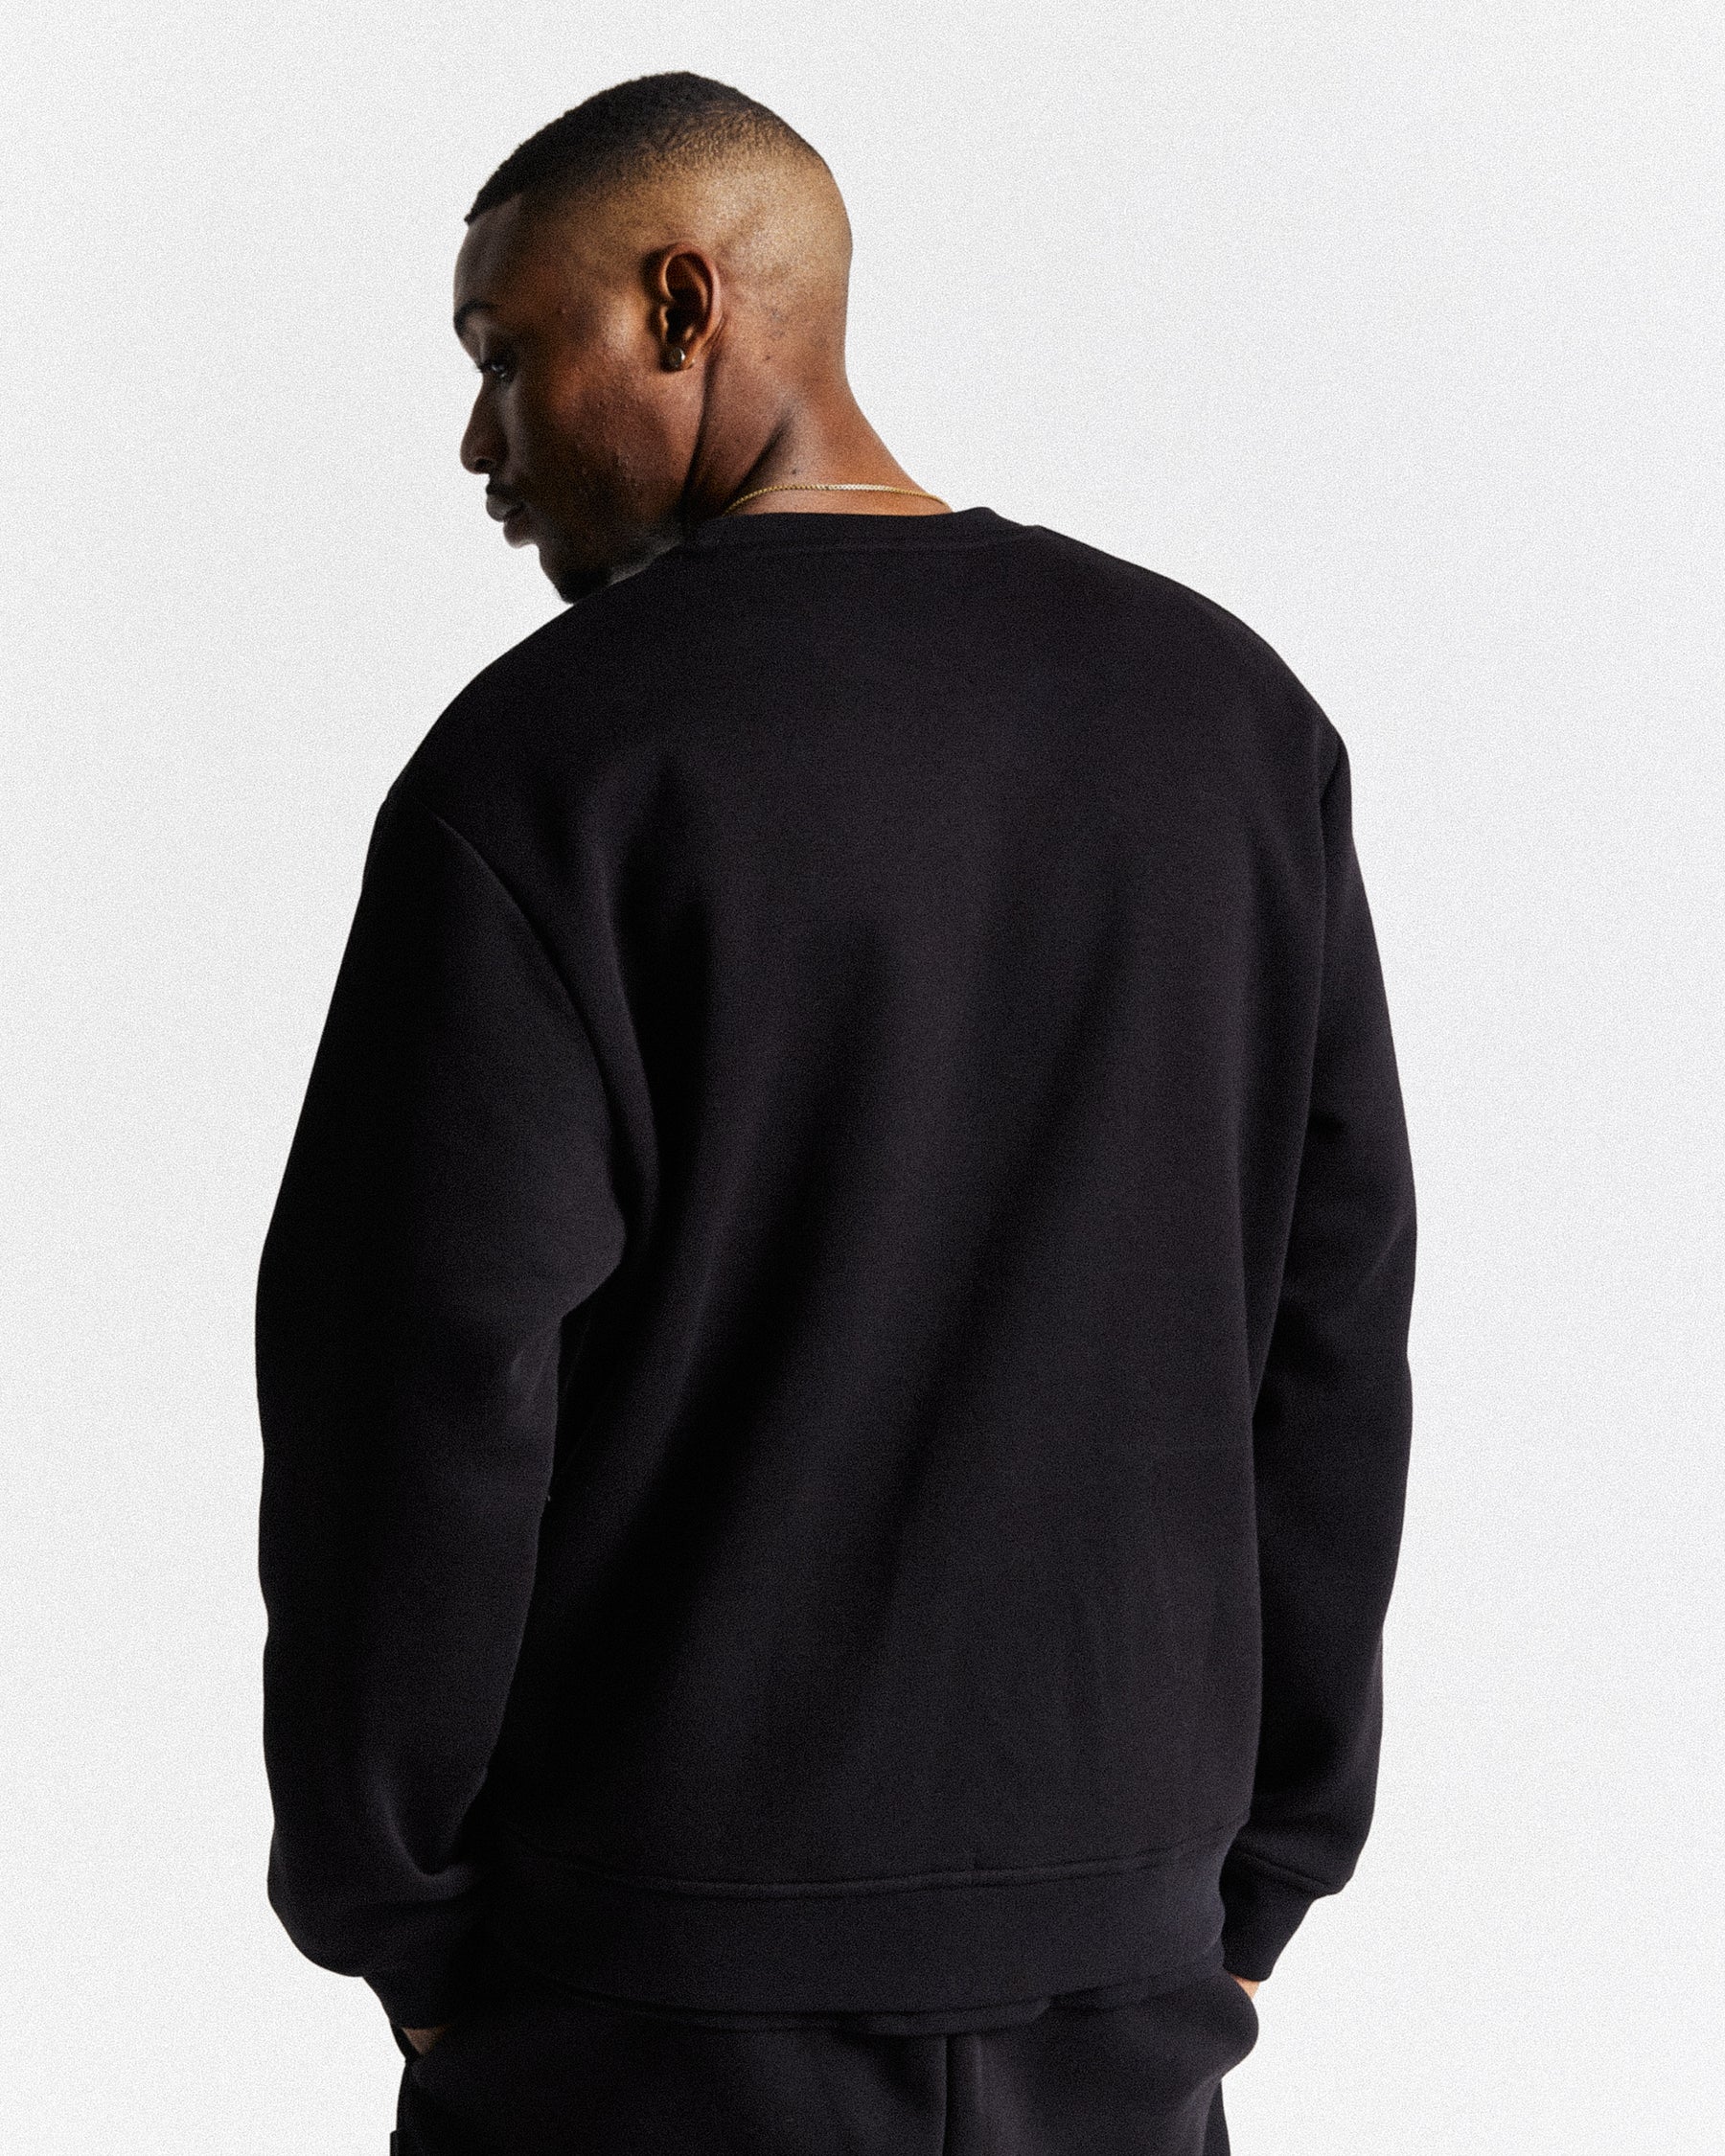 OG Core Sweatshirt | Black/White | Hoodrich Men's